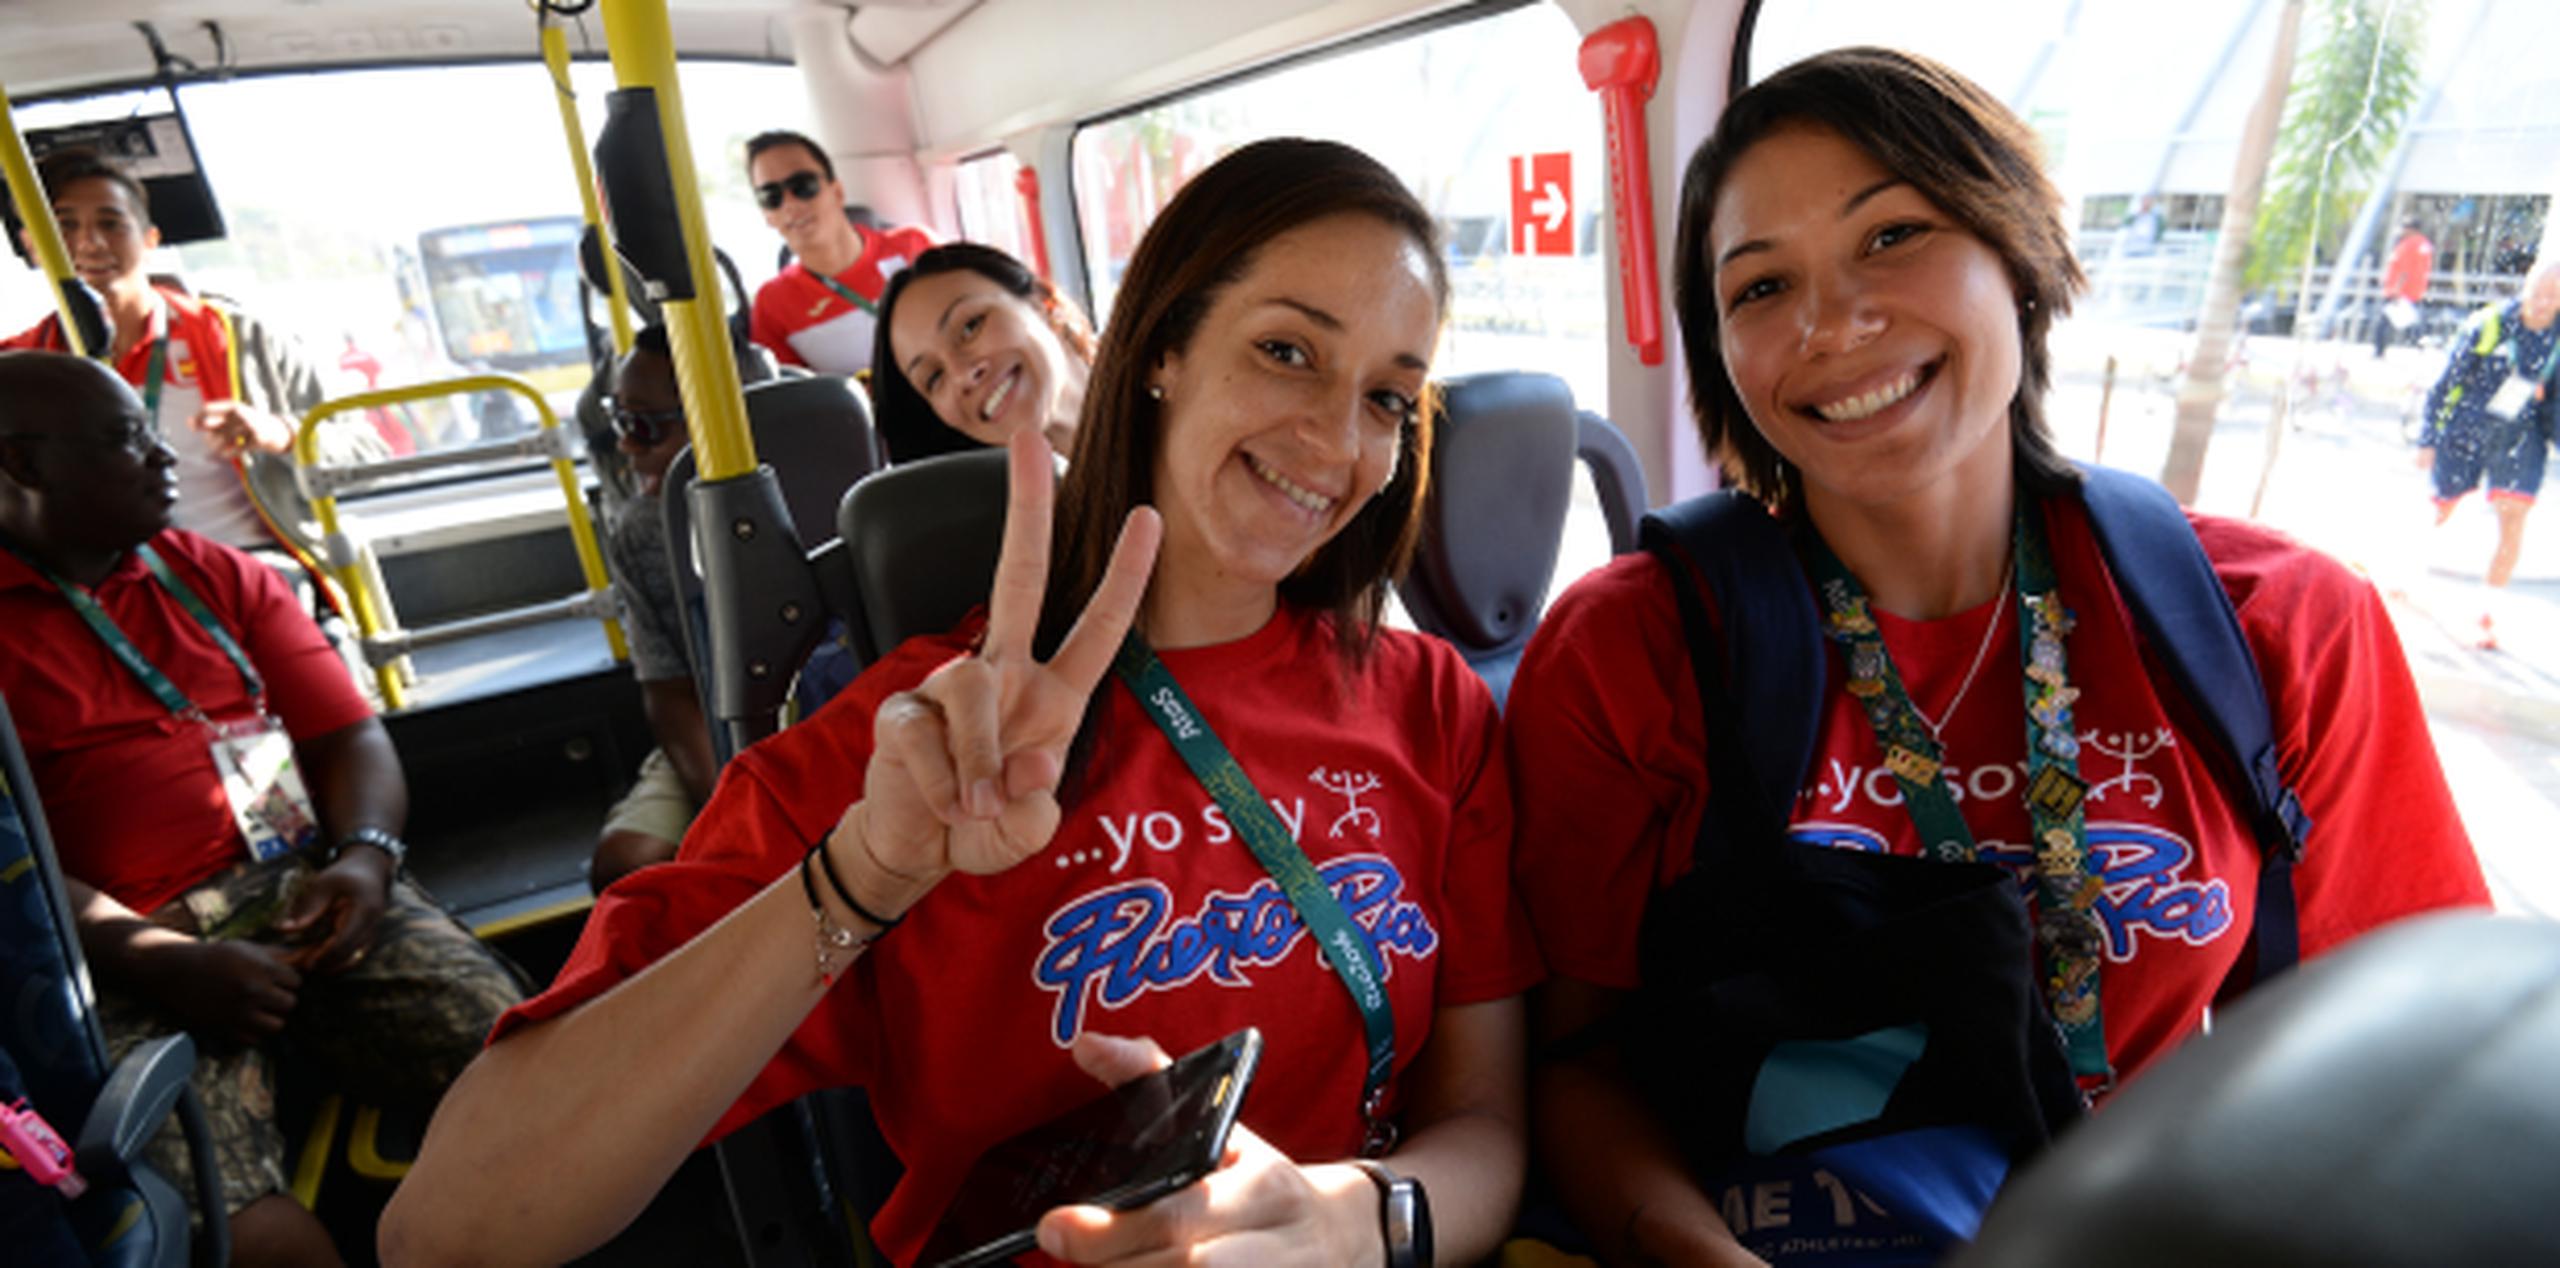 Alexandra Oquendo y Karina Ocasio son dos de las jugadoras que dejarán la selección luego de las Olimpiadas. (andre.kang@gfrmadia.com)